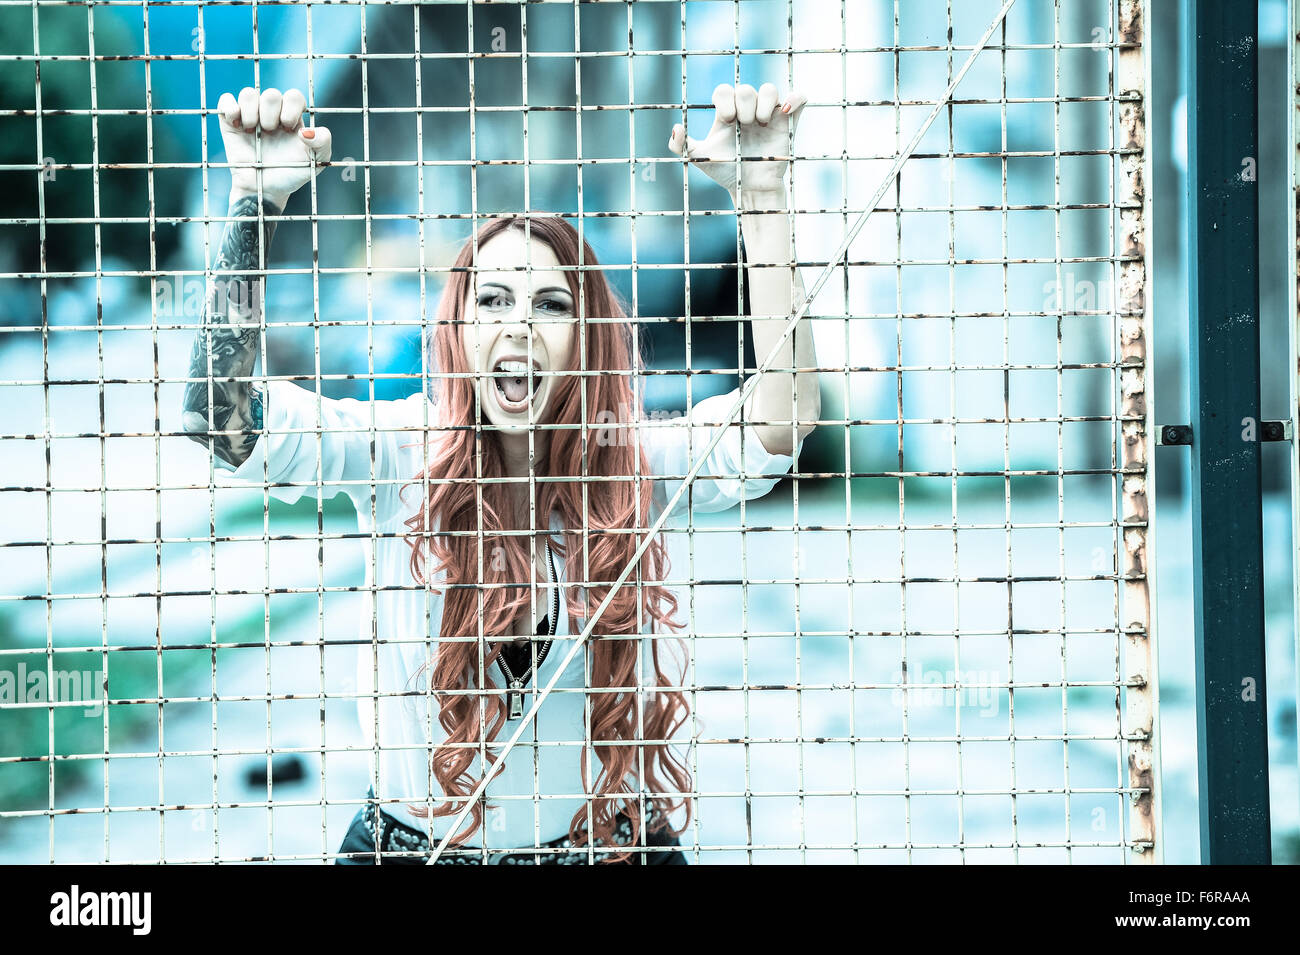 Mujer joven con largo pelo rojo y un tatuaje gritando detrás de las rejas Foto de stock